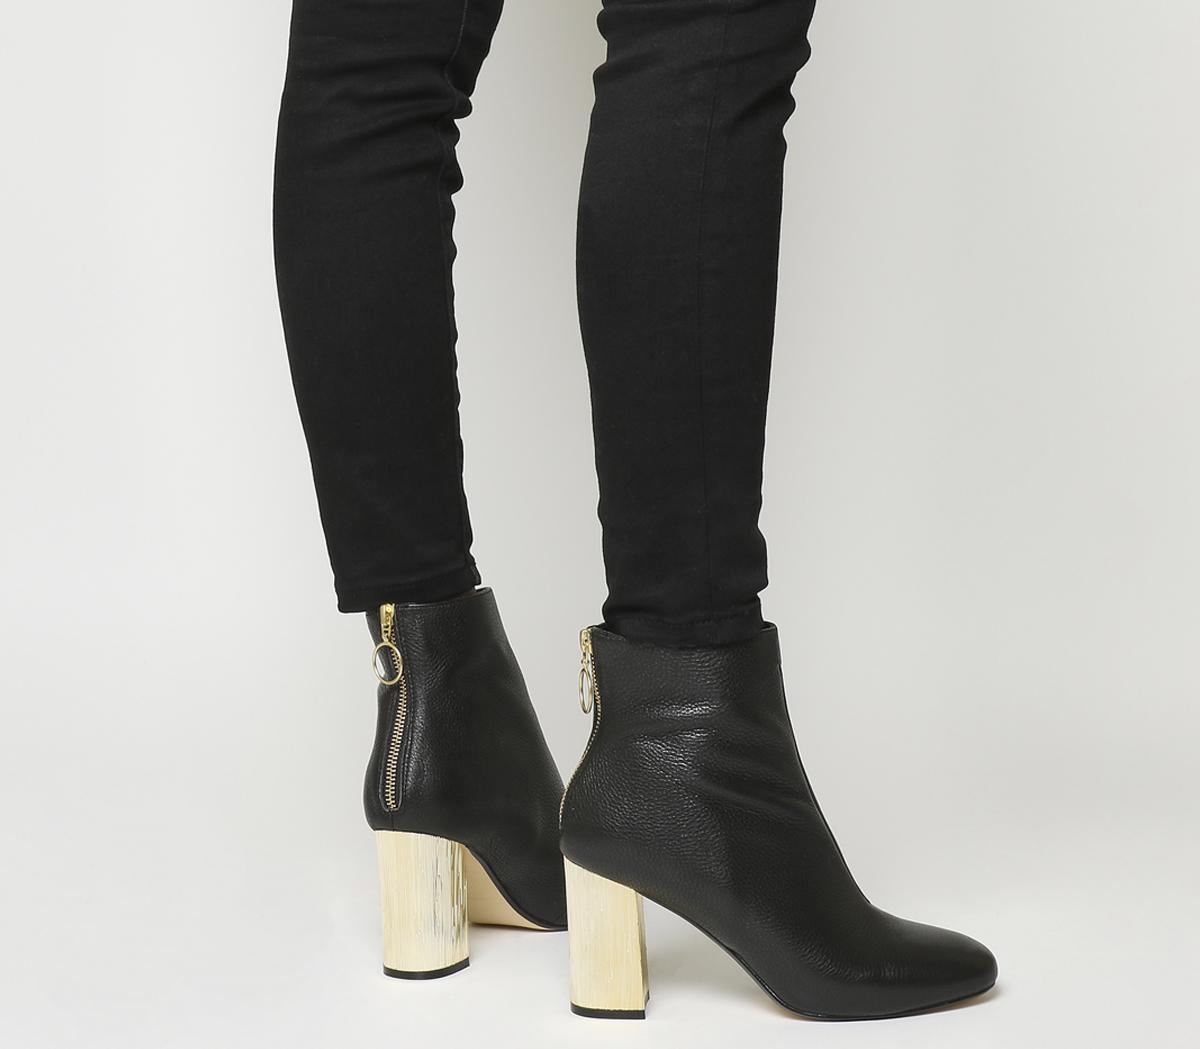 black and gold bootie heels